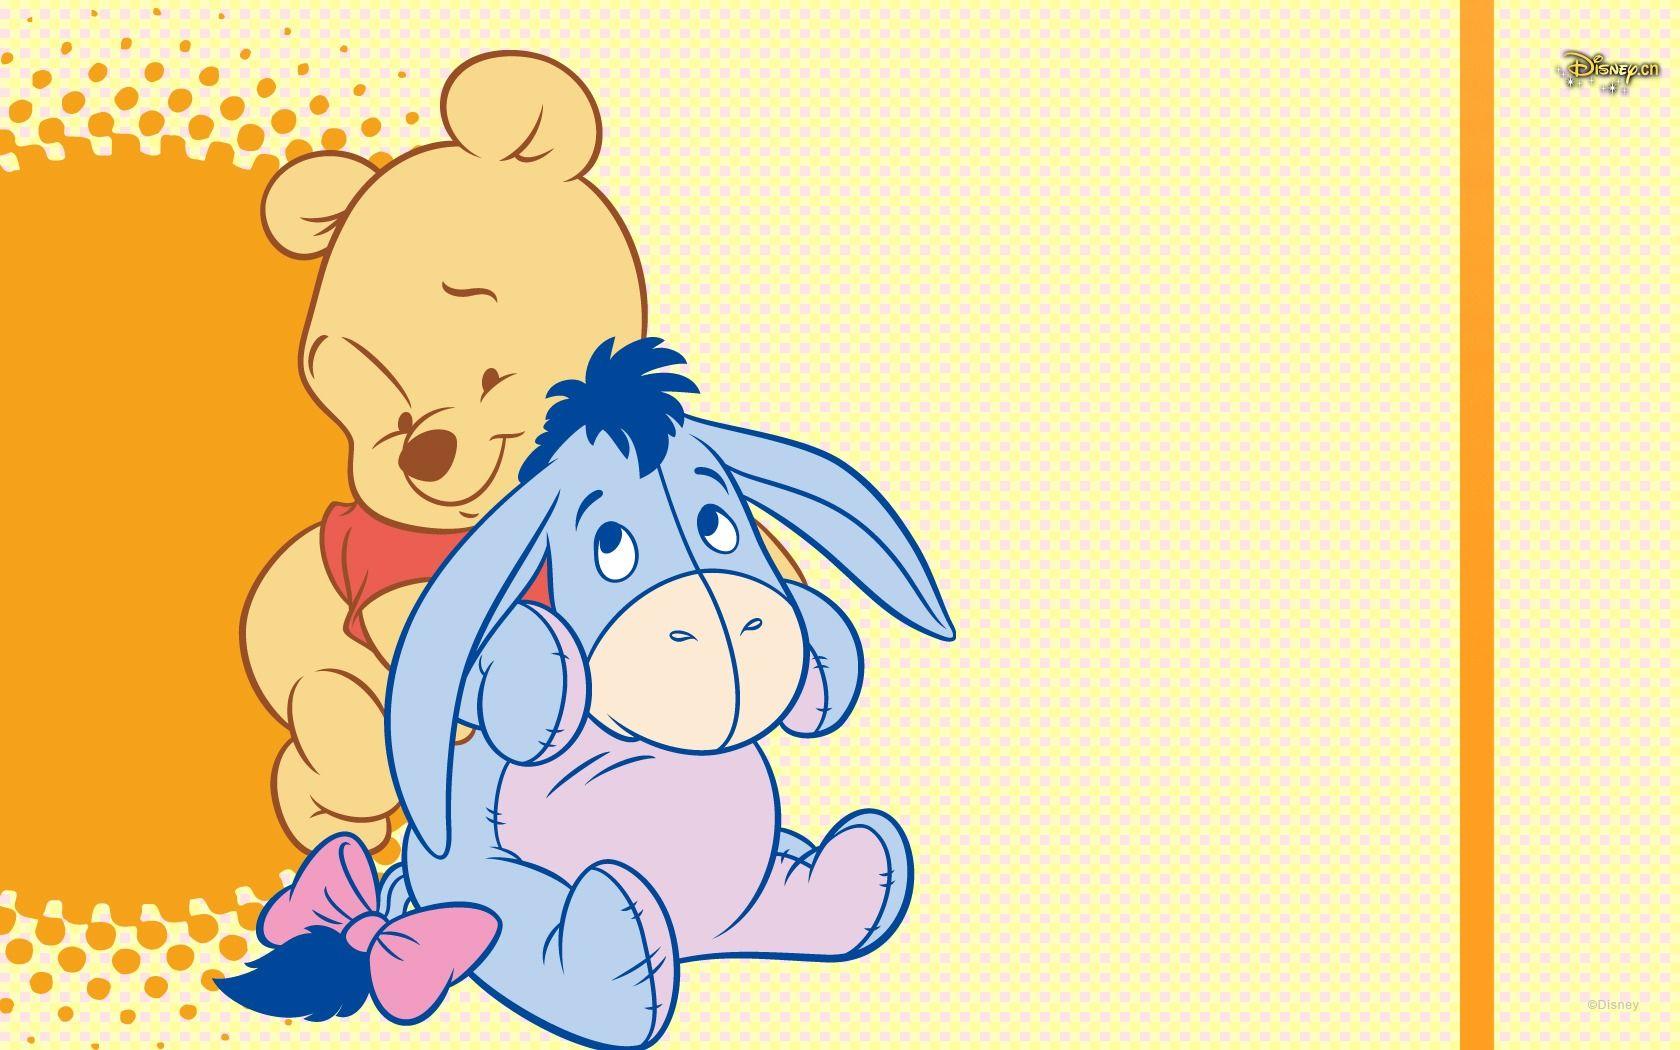 Winnie The Pooh HD Wallpaper